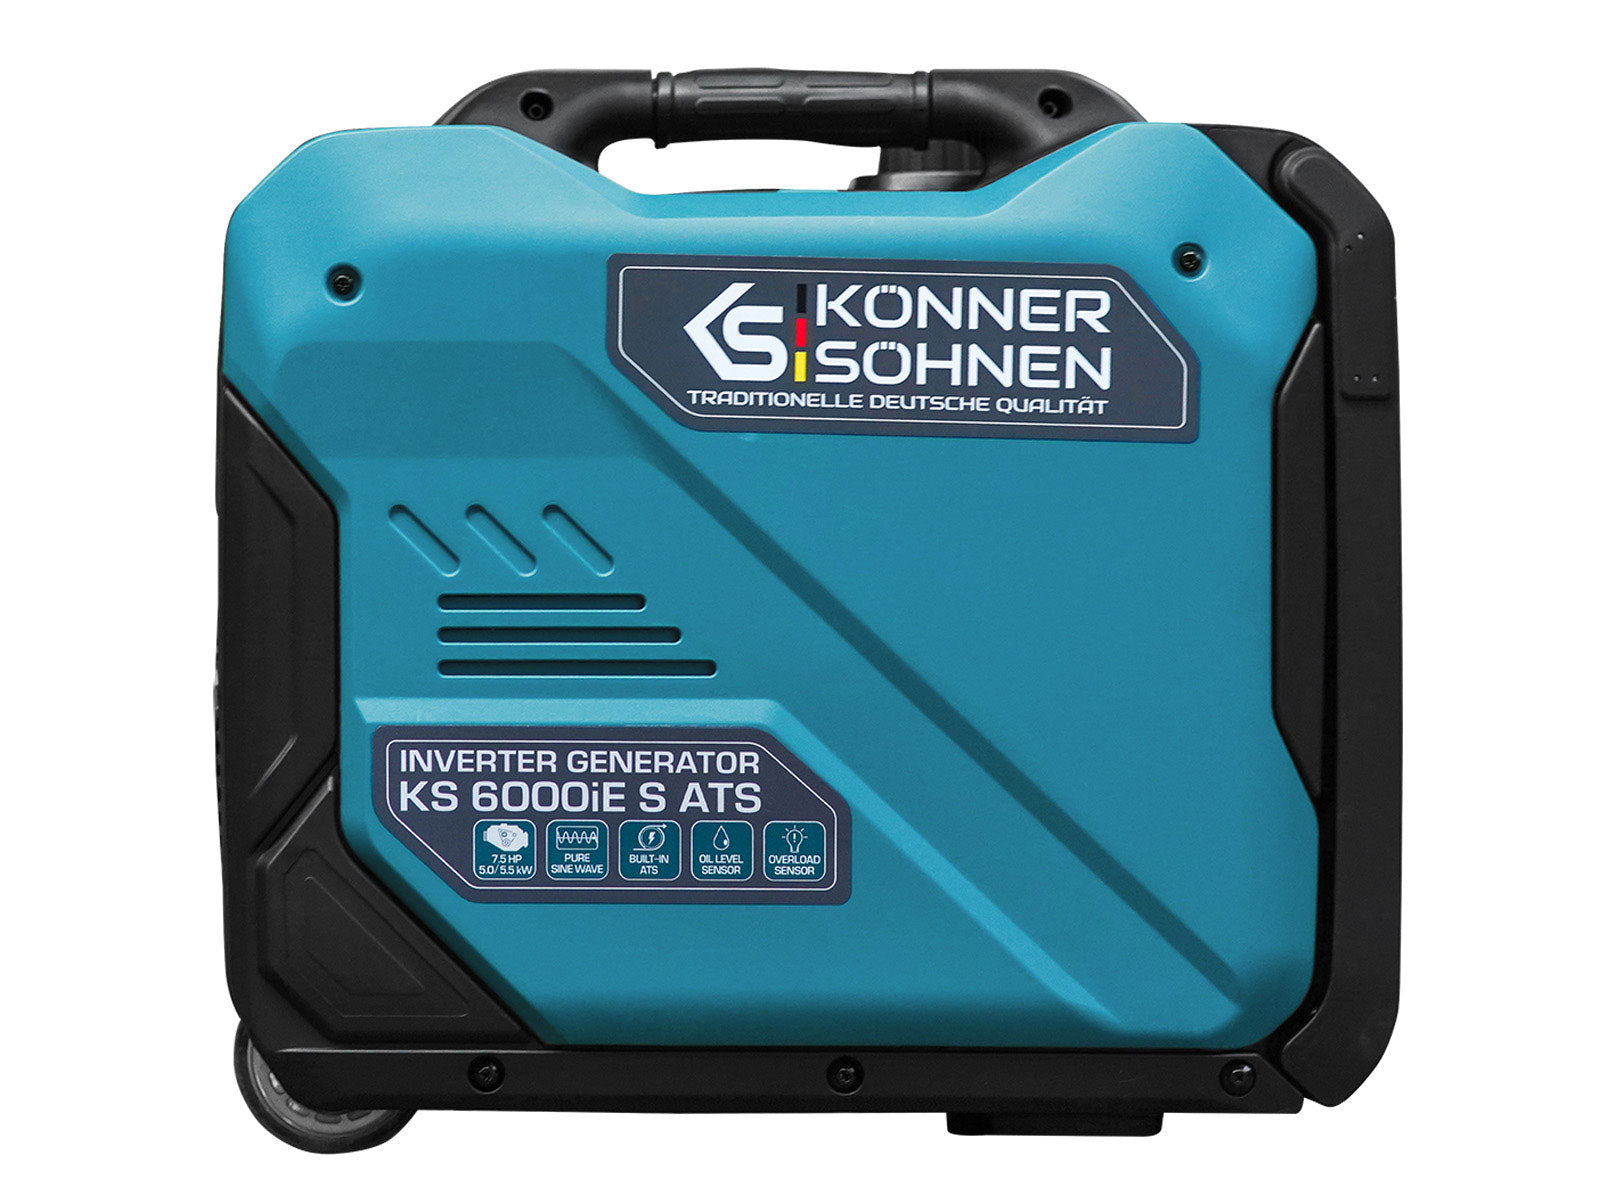 Générateur-onduleur dans la boîte anti-bruit KS 4000iE S ATS Version 2